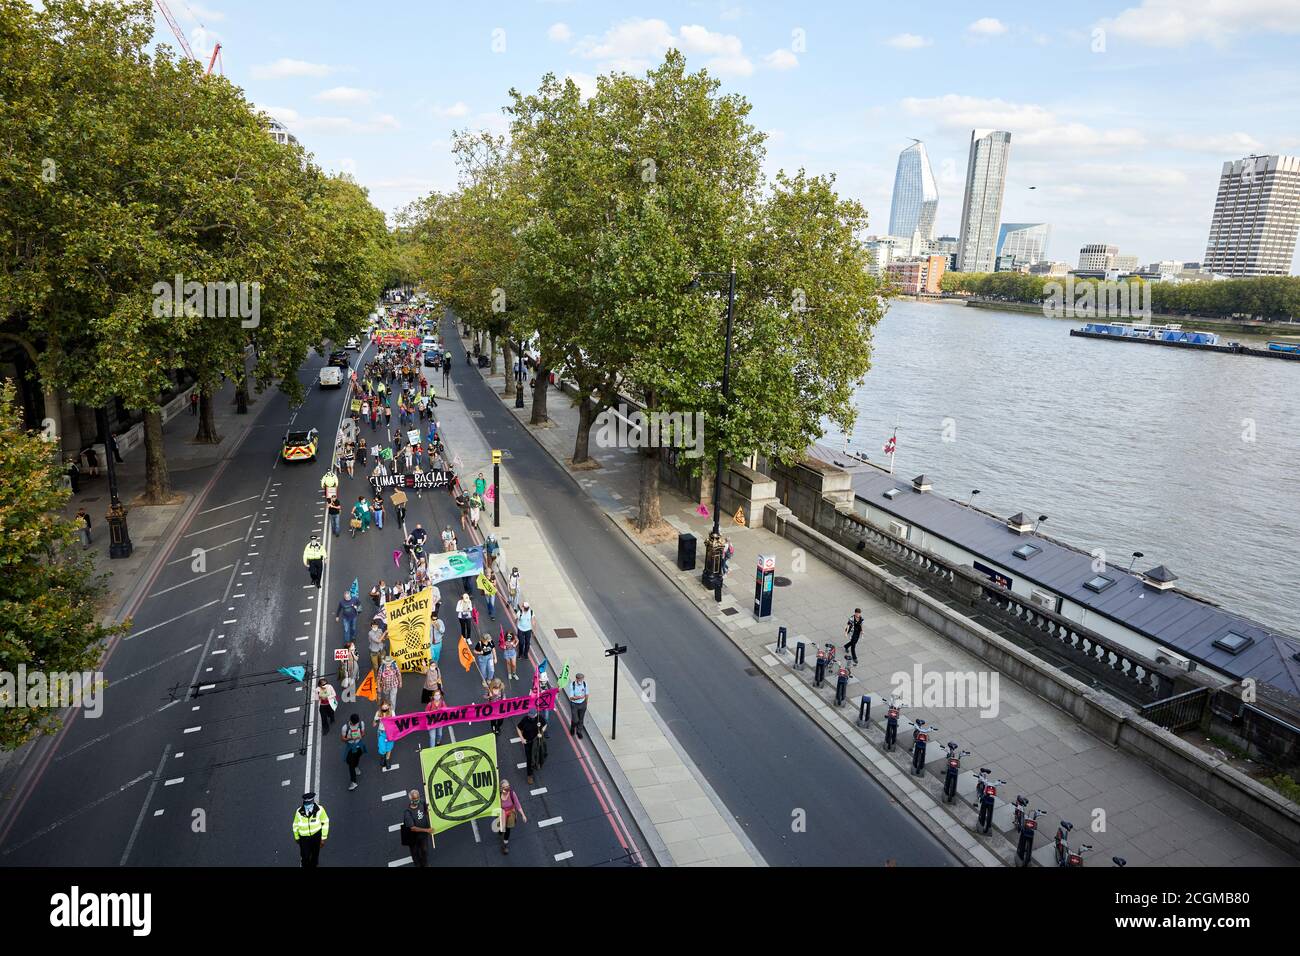 Londres, Reino Unido. - 10 Sept 2020: Los partidarios de la rebelión de extinción marchan junto al río Támesis mientras se dirigen hacia una protesta en la Plaza del Parlamento. Foto de stock